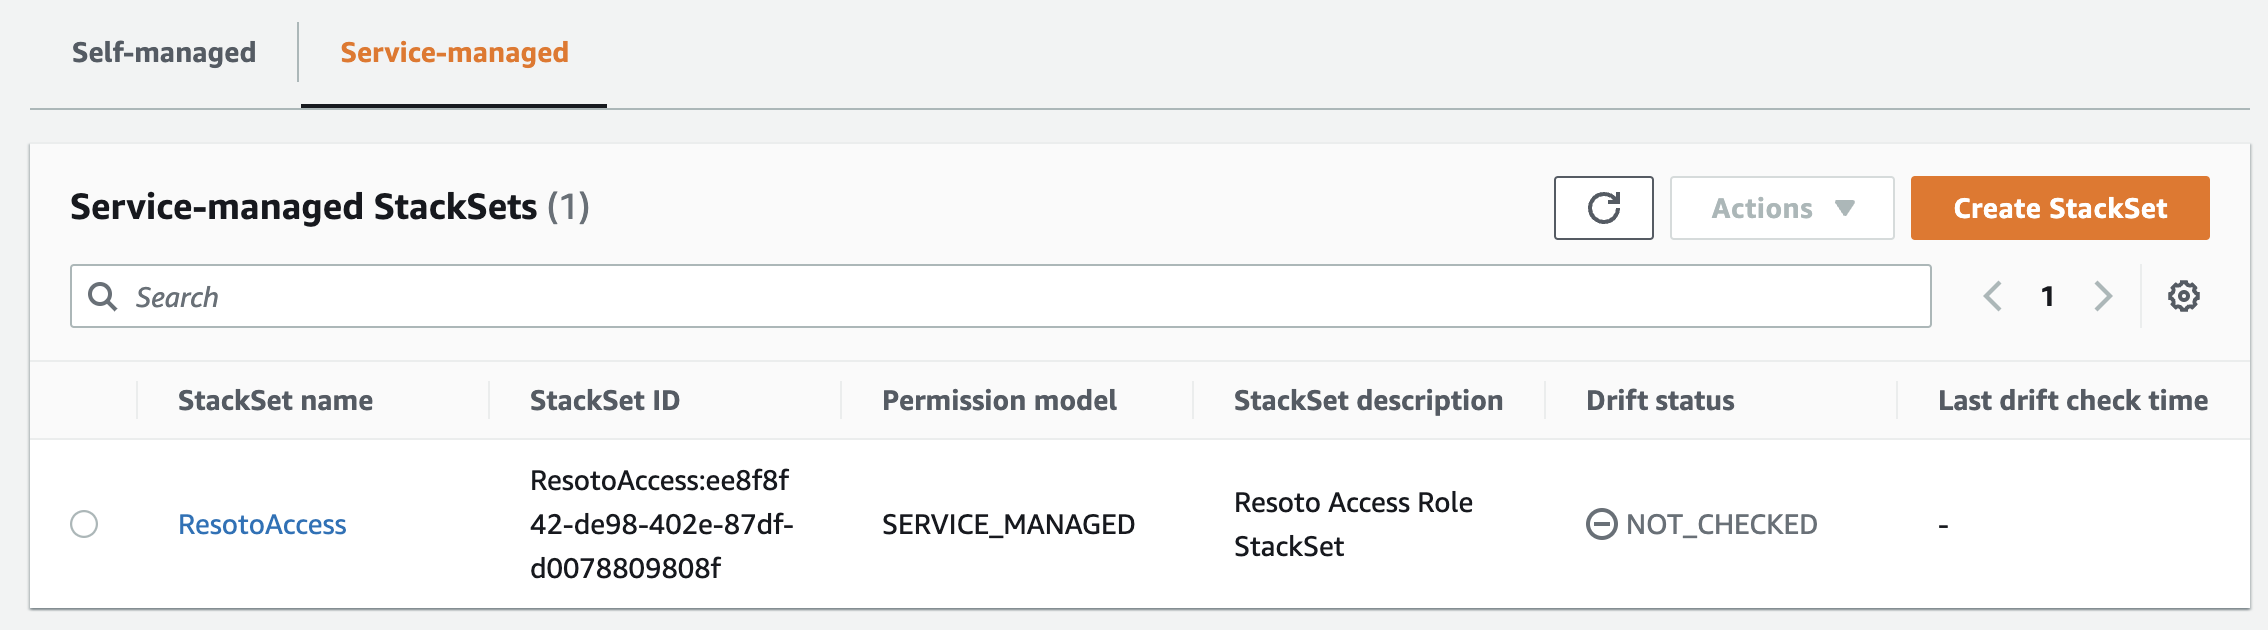 StackSet Creating